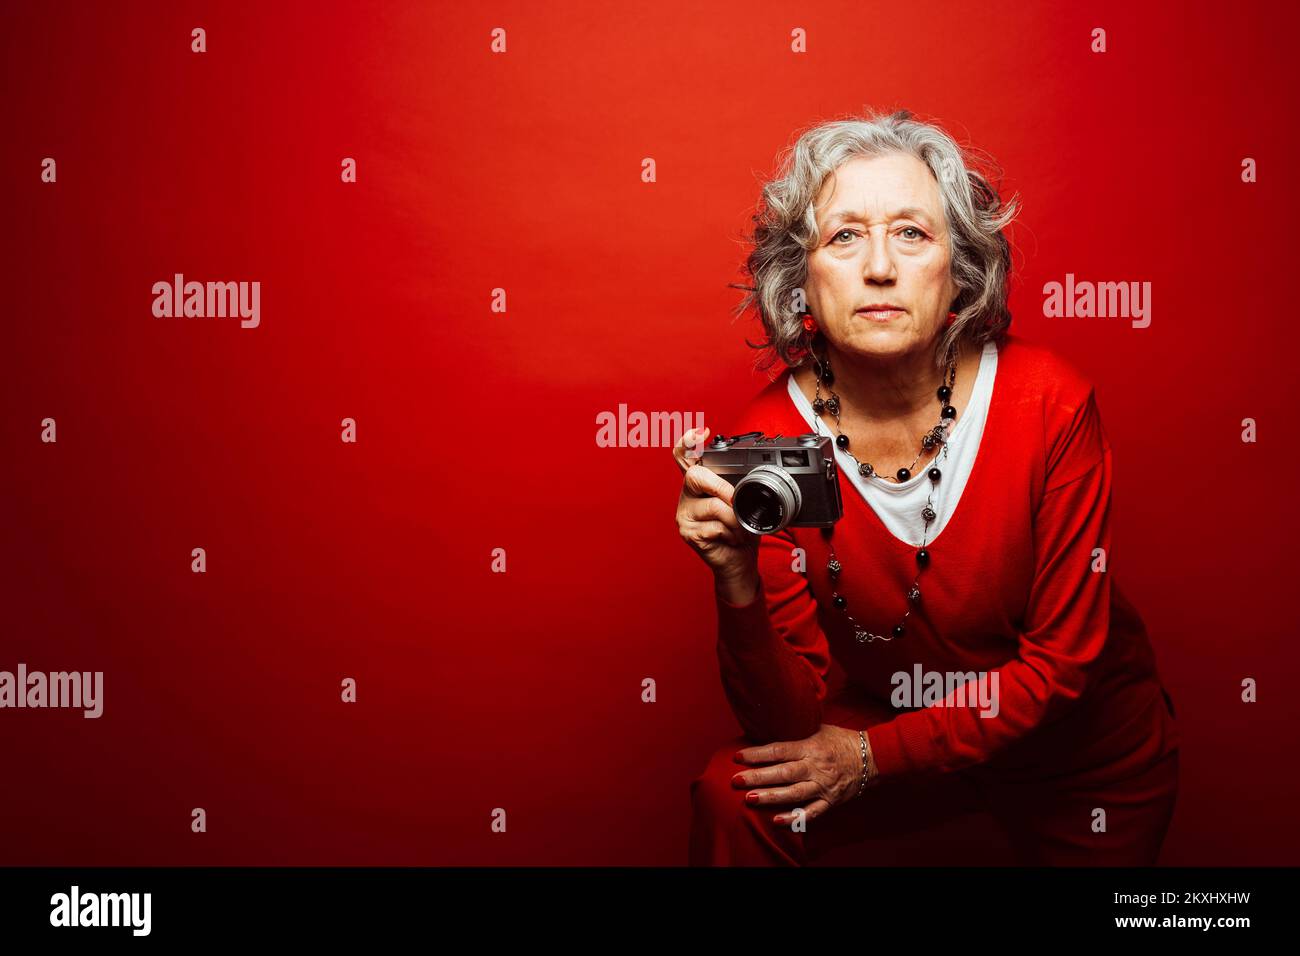 Femme âgée vêtue de vêtements rouges, prenant des photos avec un ancien appareil photo, sur fond rouge Banque D'Images